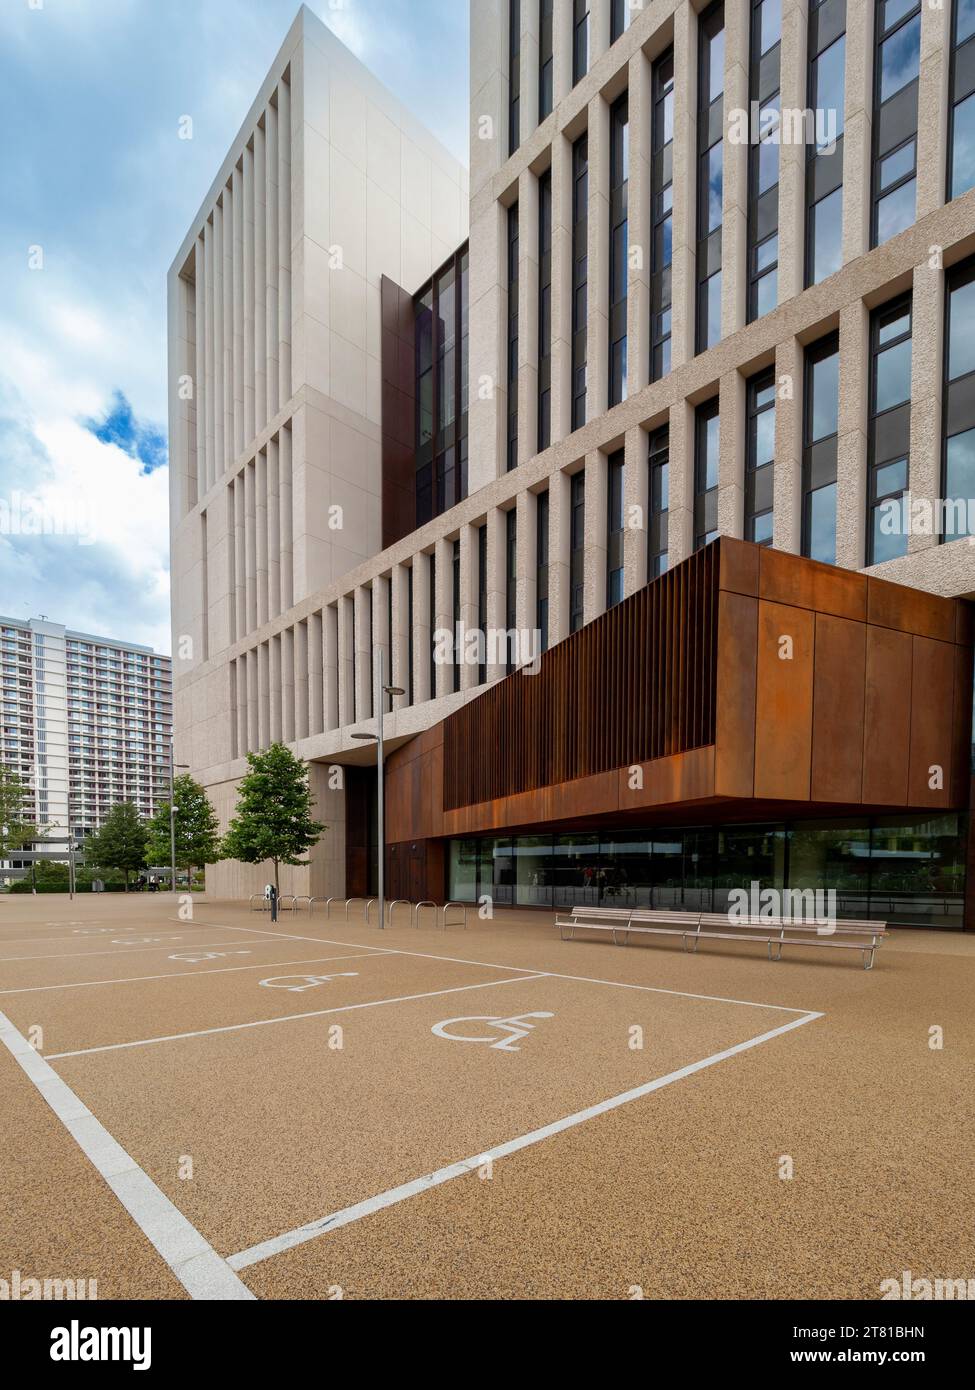 Baies de stationnement pour personnes handicapées à l'extérieur du campus est de l'UCL bâtiment Marshgate conçu par Stanton Williams, situé dans l'ancien parc olympique, Stratford, Londres. Banque D'Images